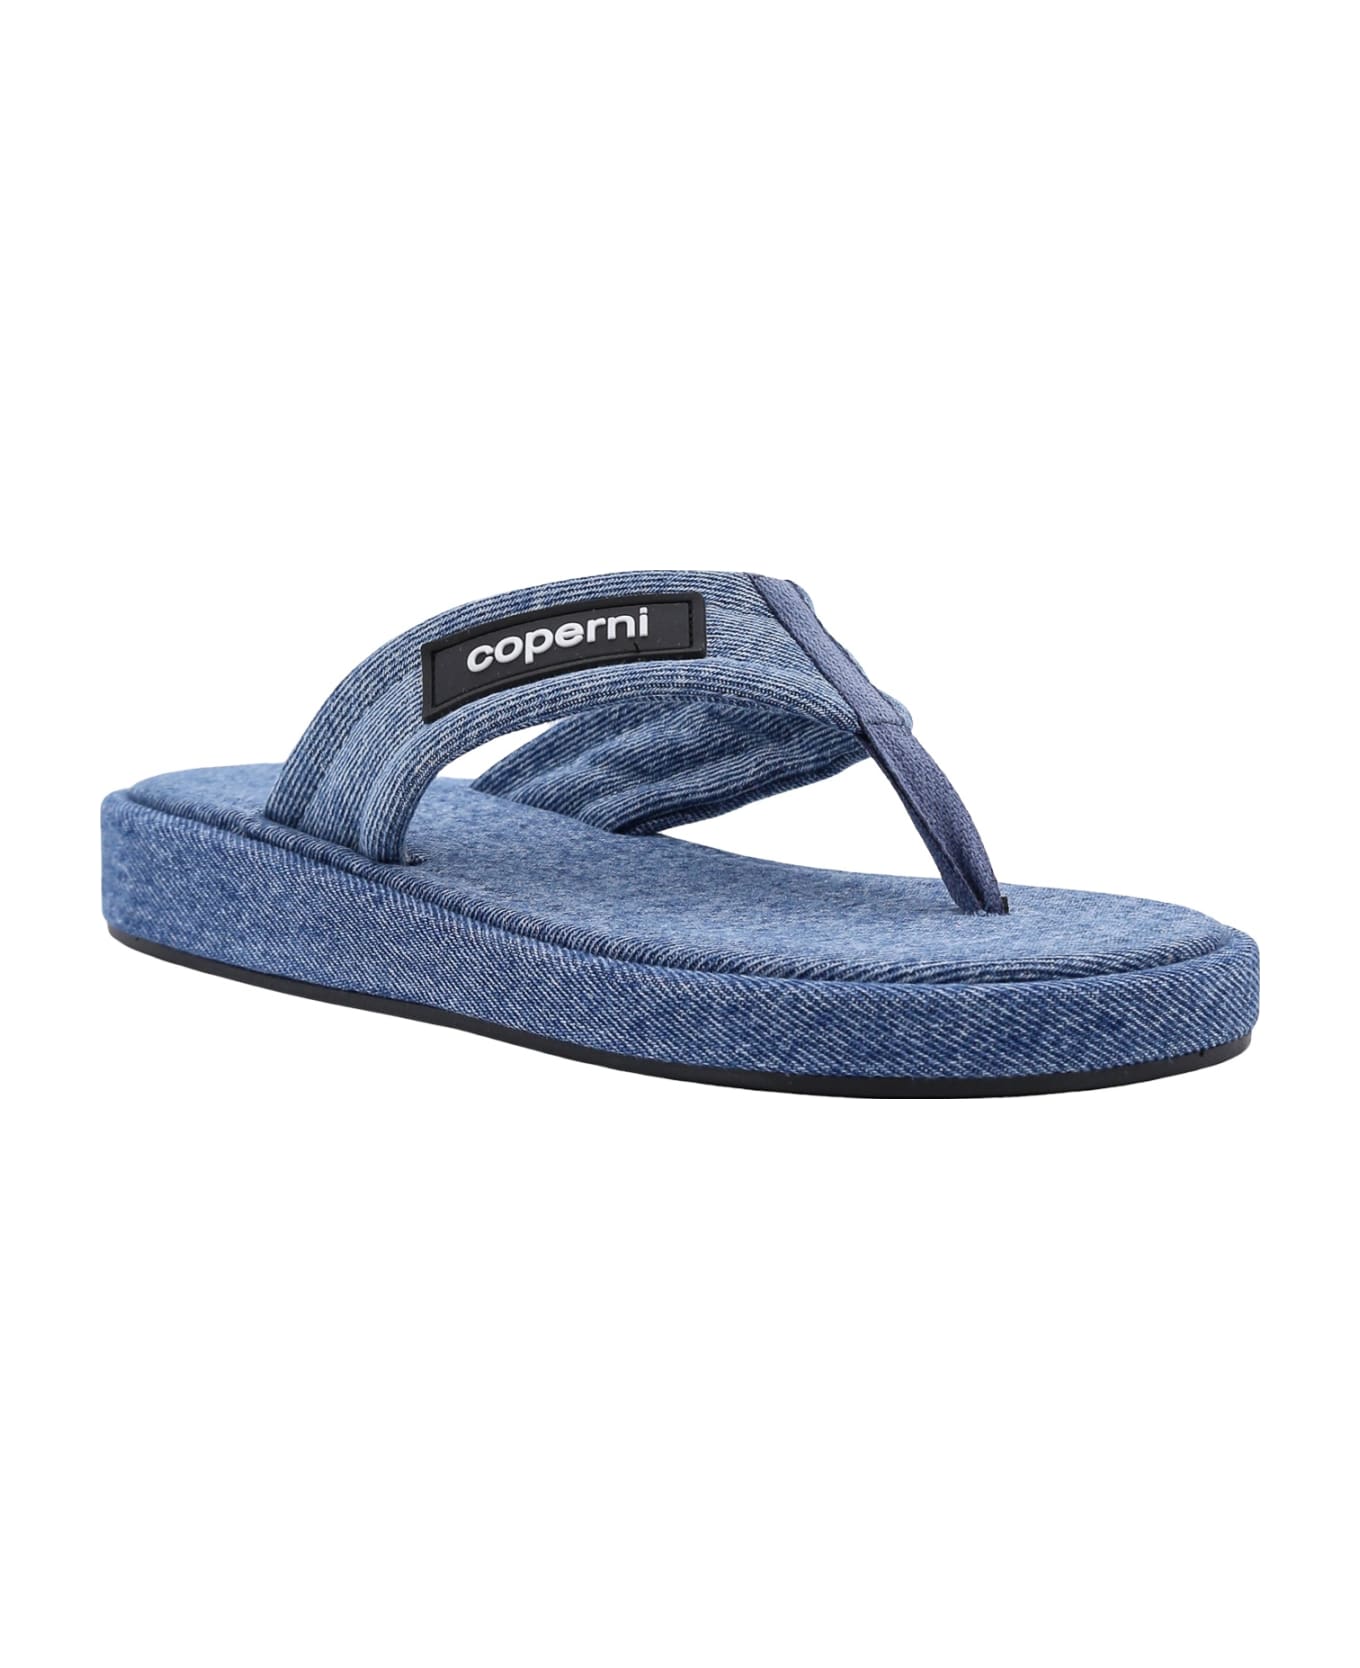 Coperni Sandals - Blue サンダル